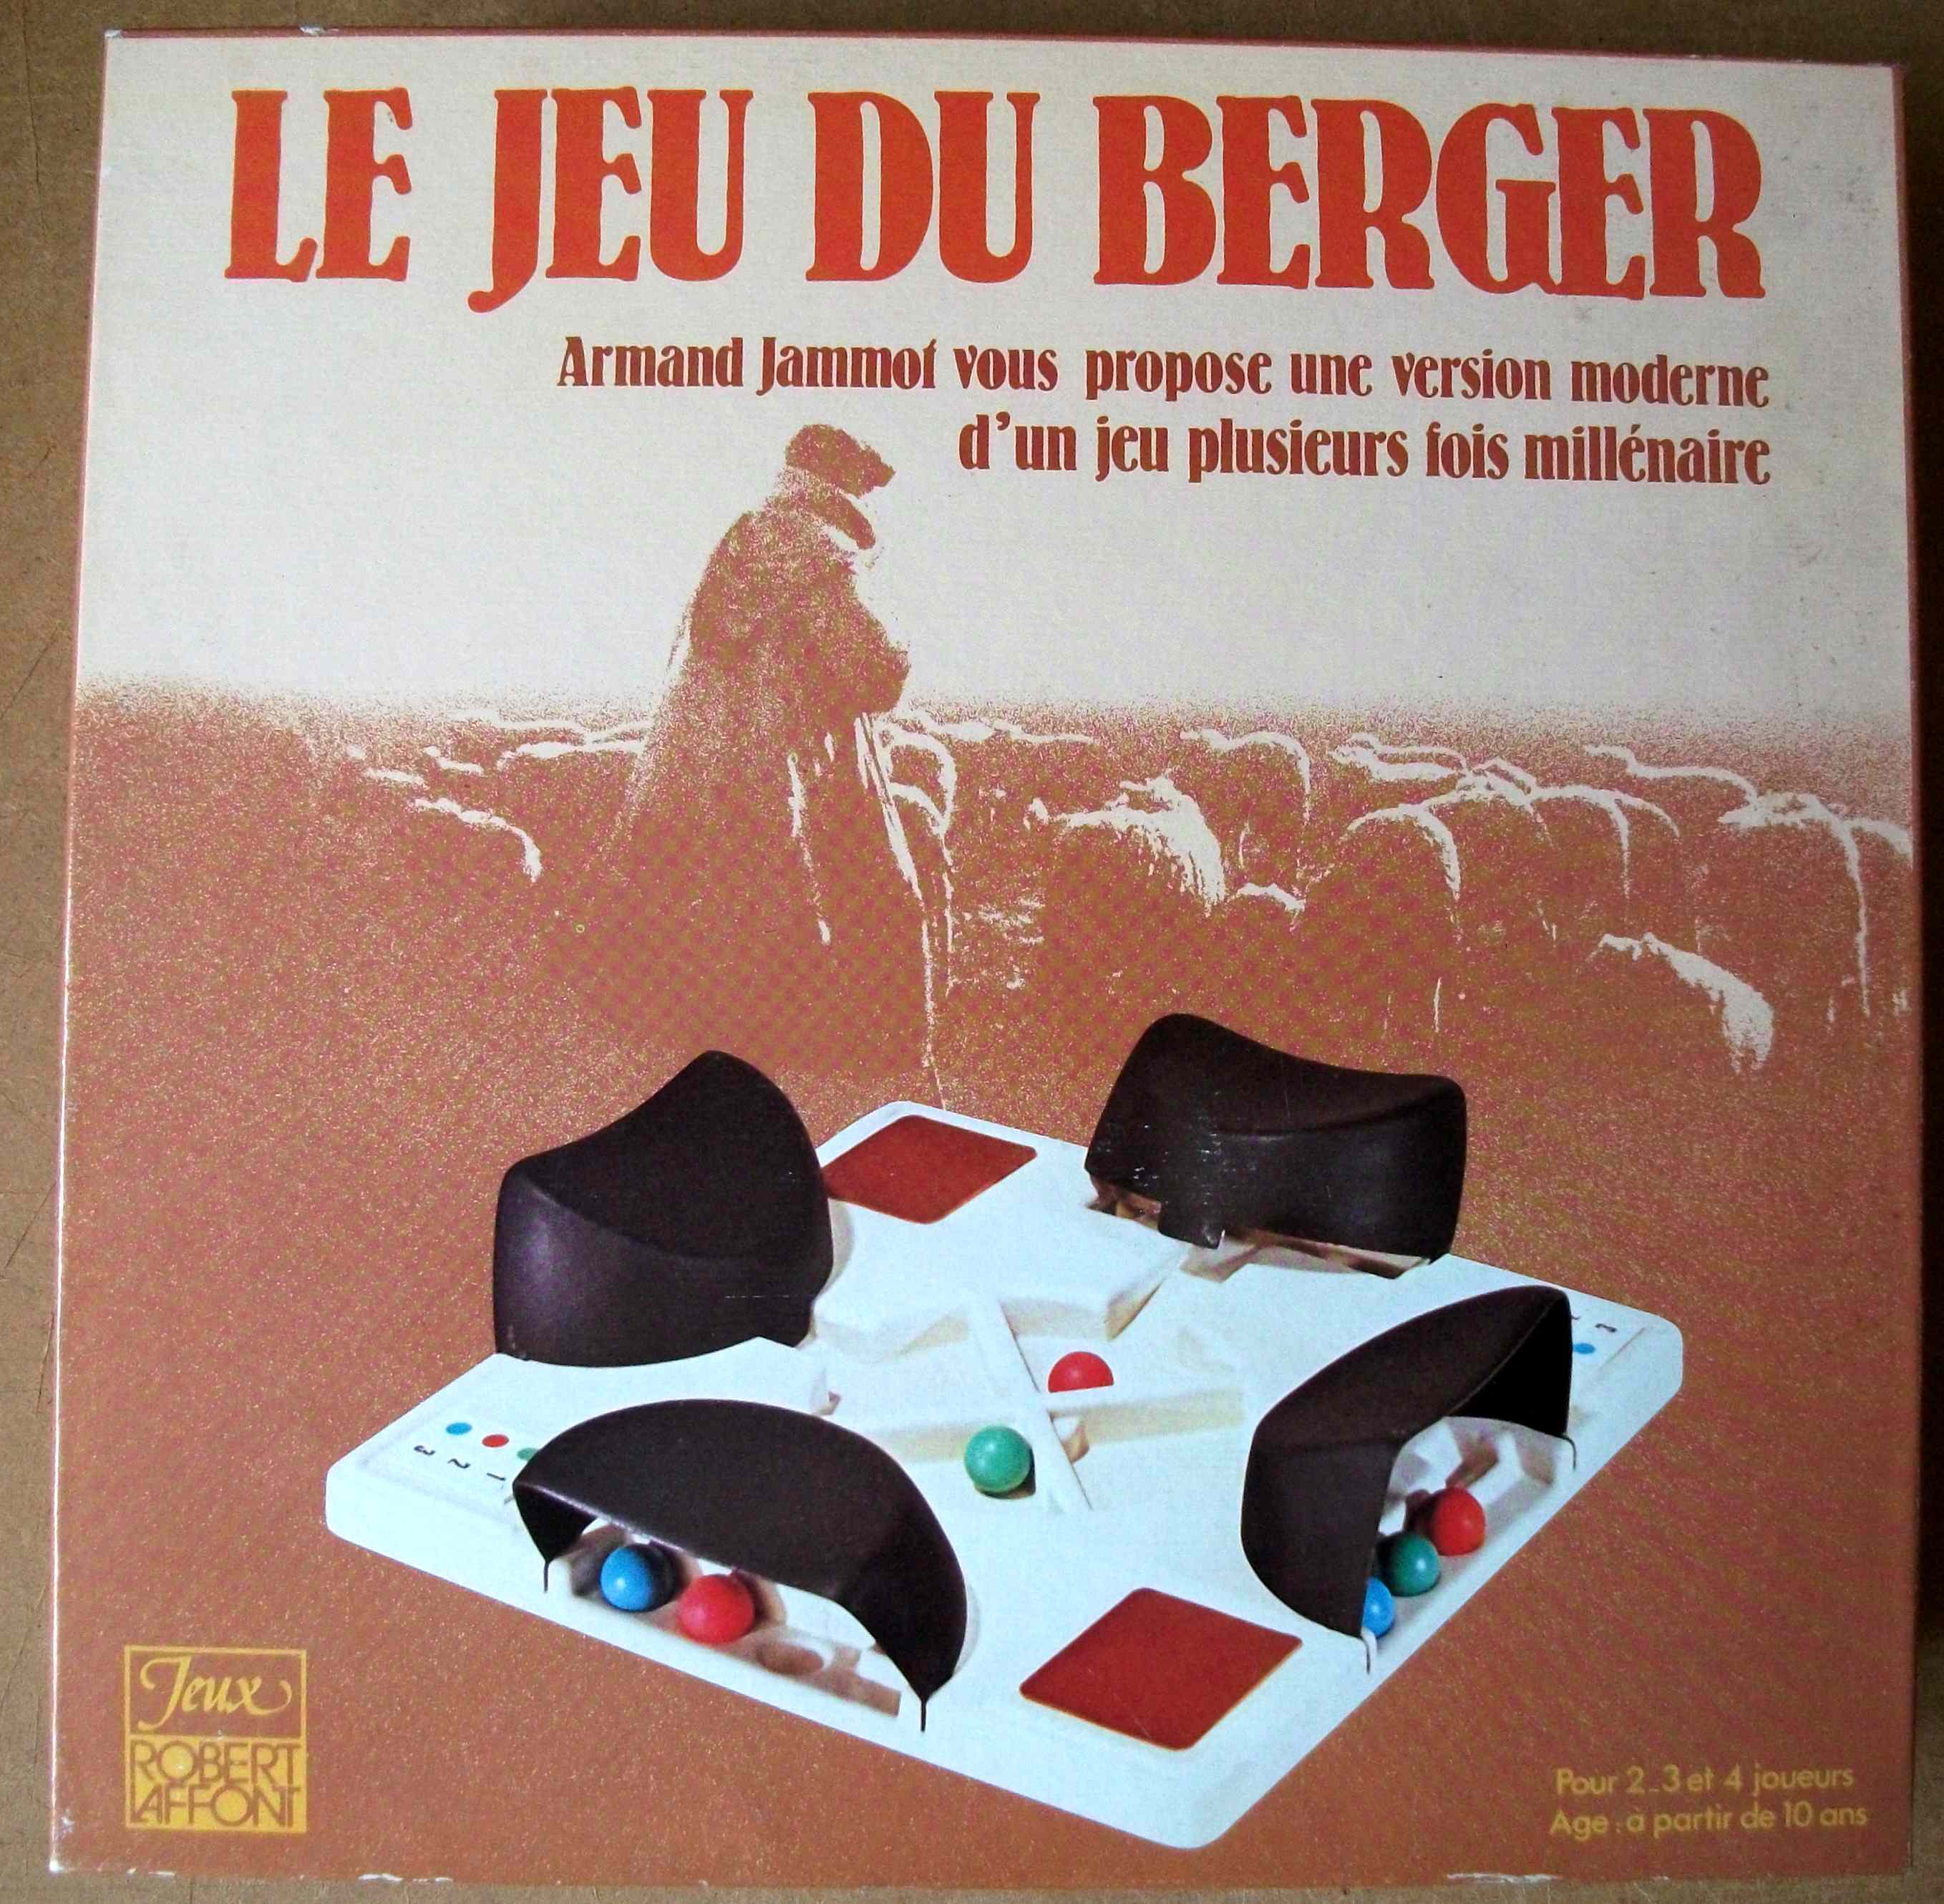 Le Jeu du Berger - Robert Laffon - 1979